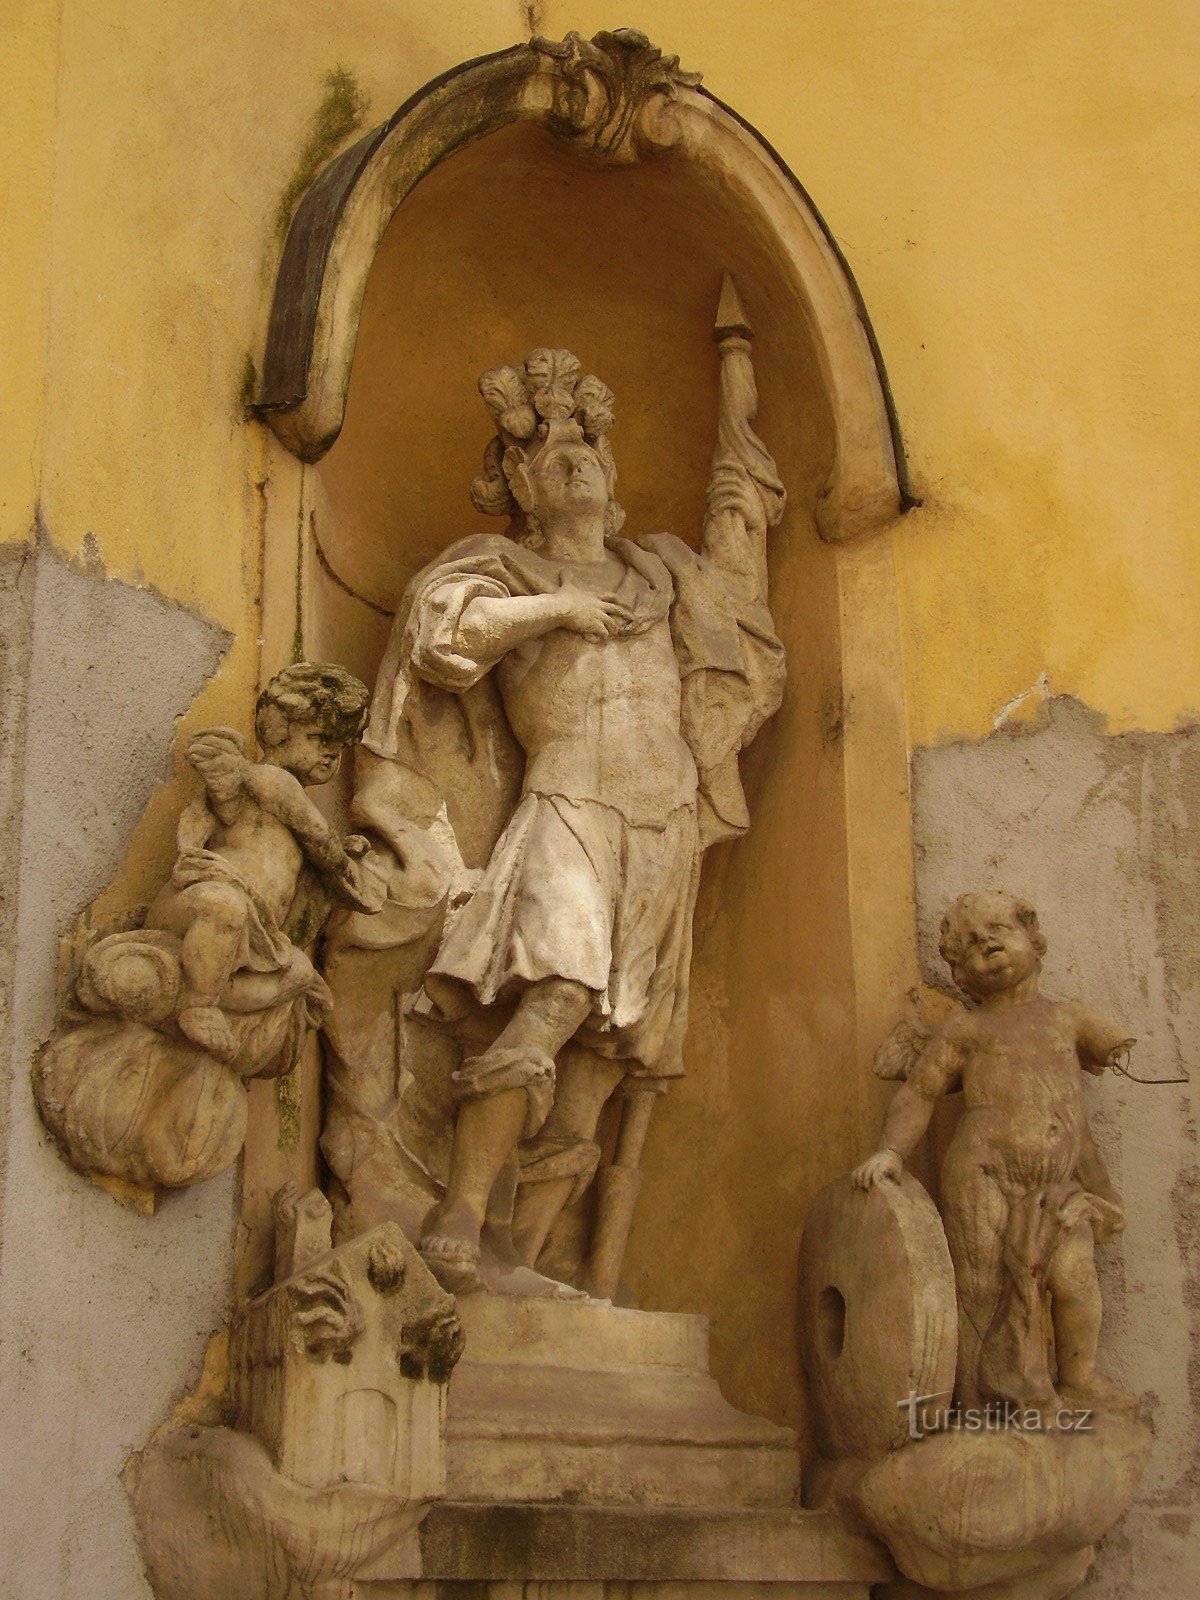 Posąg św. Floriana w Brnie - ulica Franciszkańska